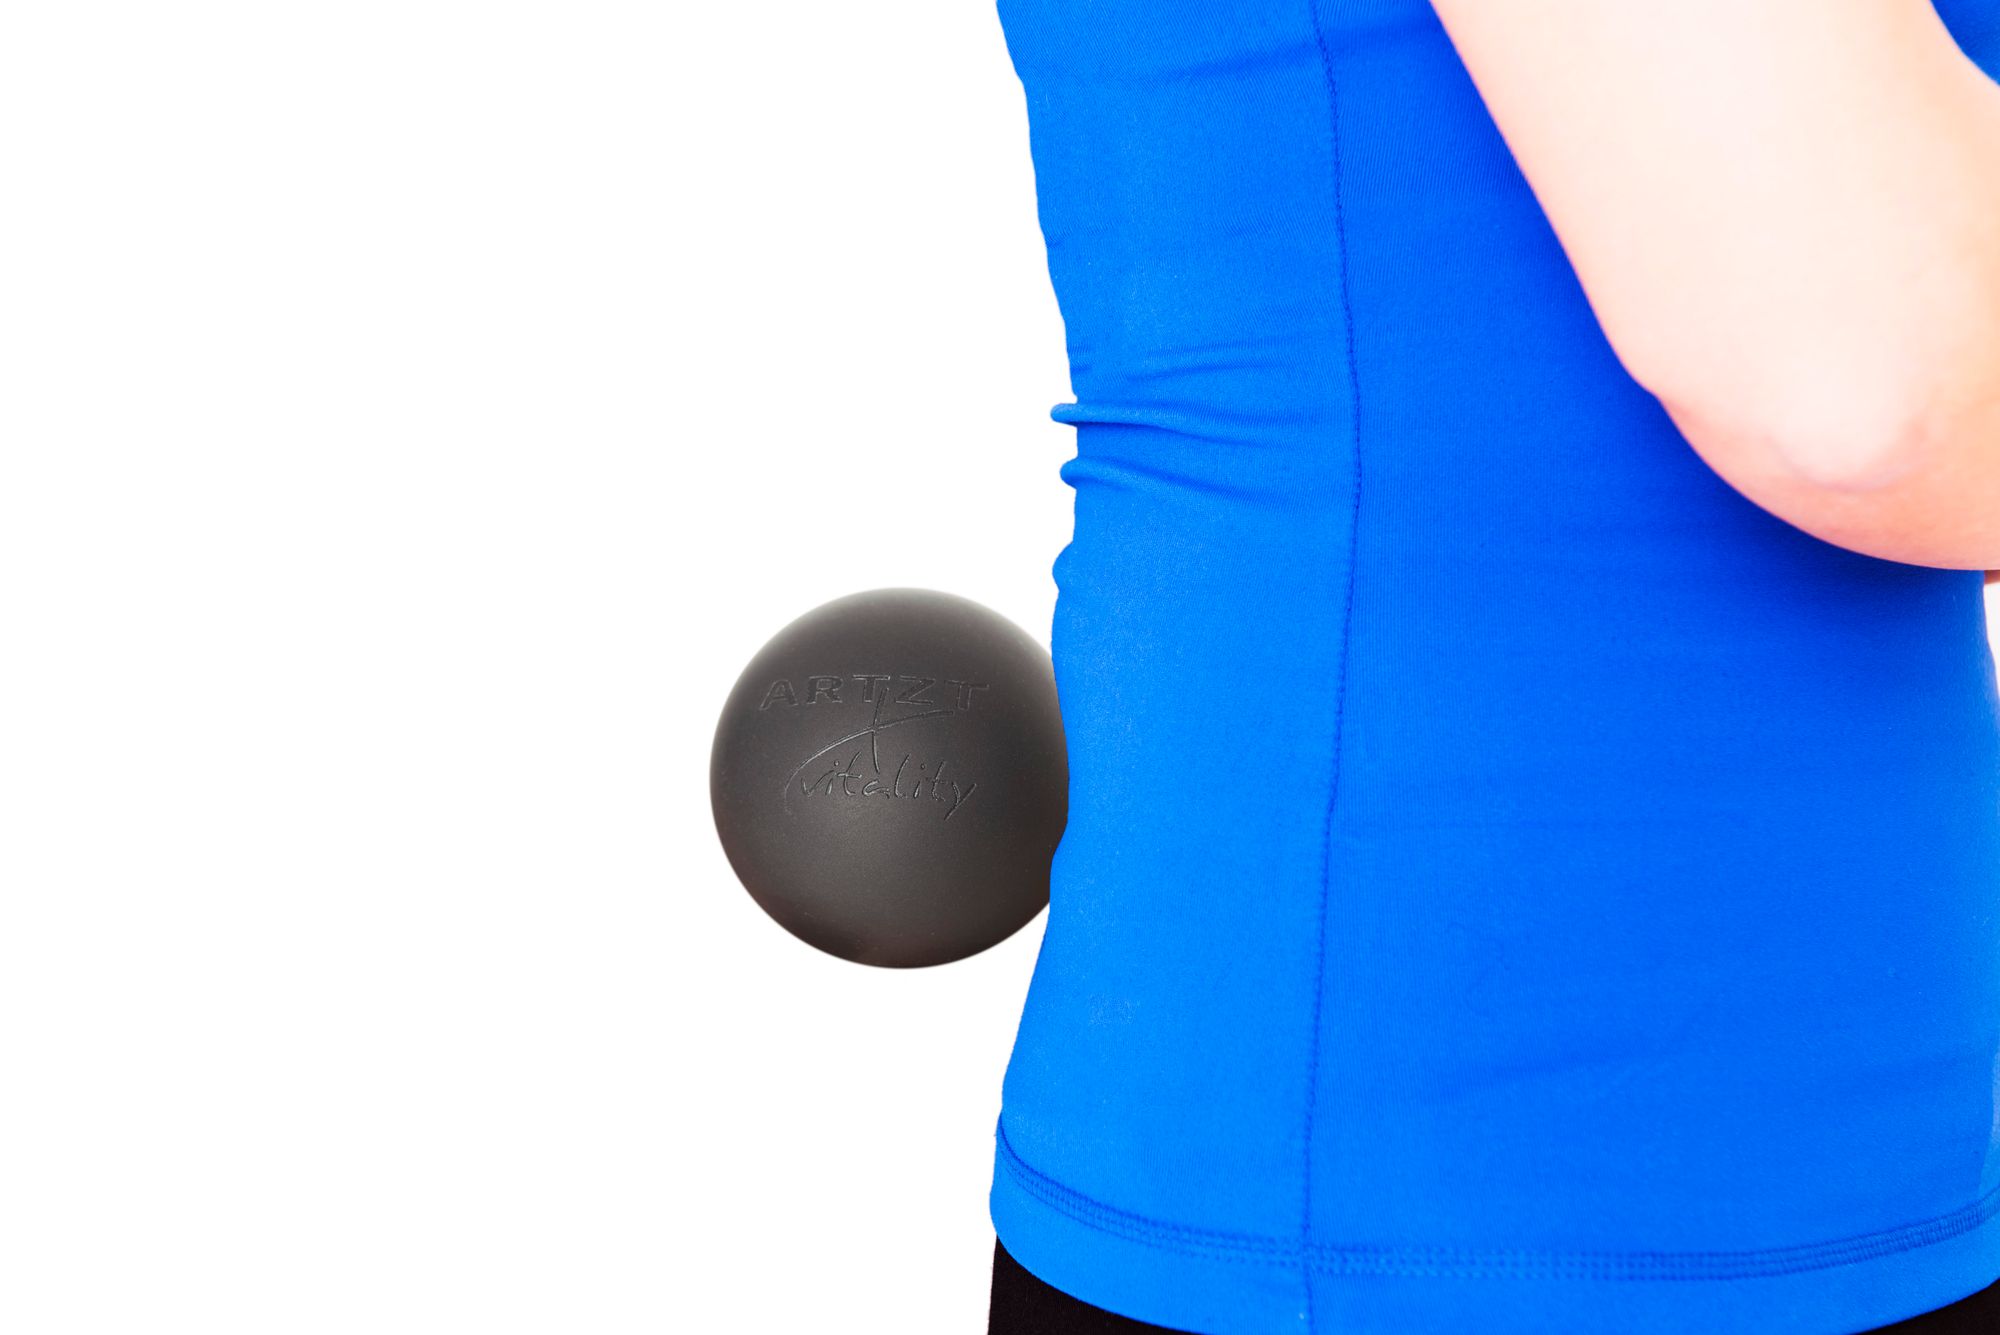 ARTZT vitality Triggerpunkt-Massageball Ø 6 cm, schwarz